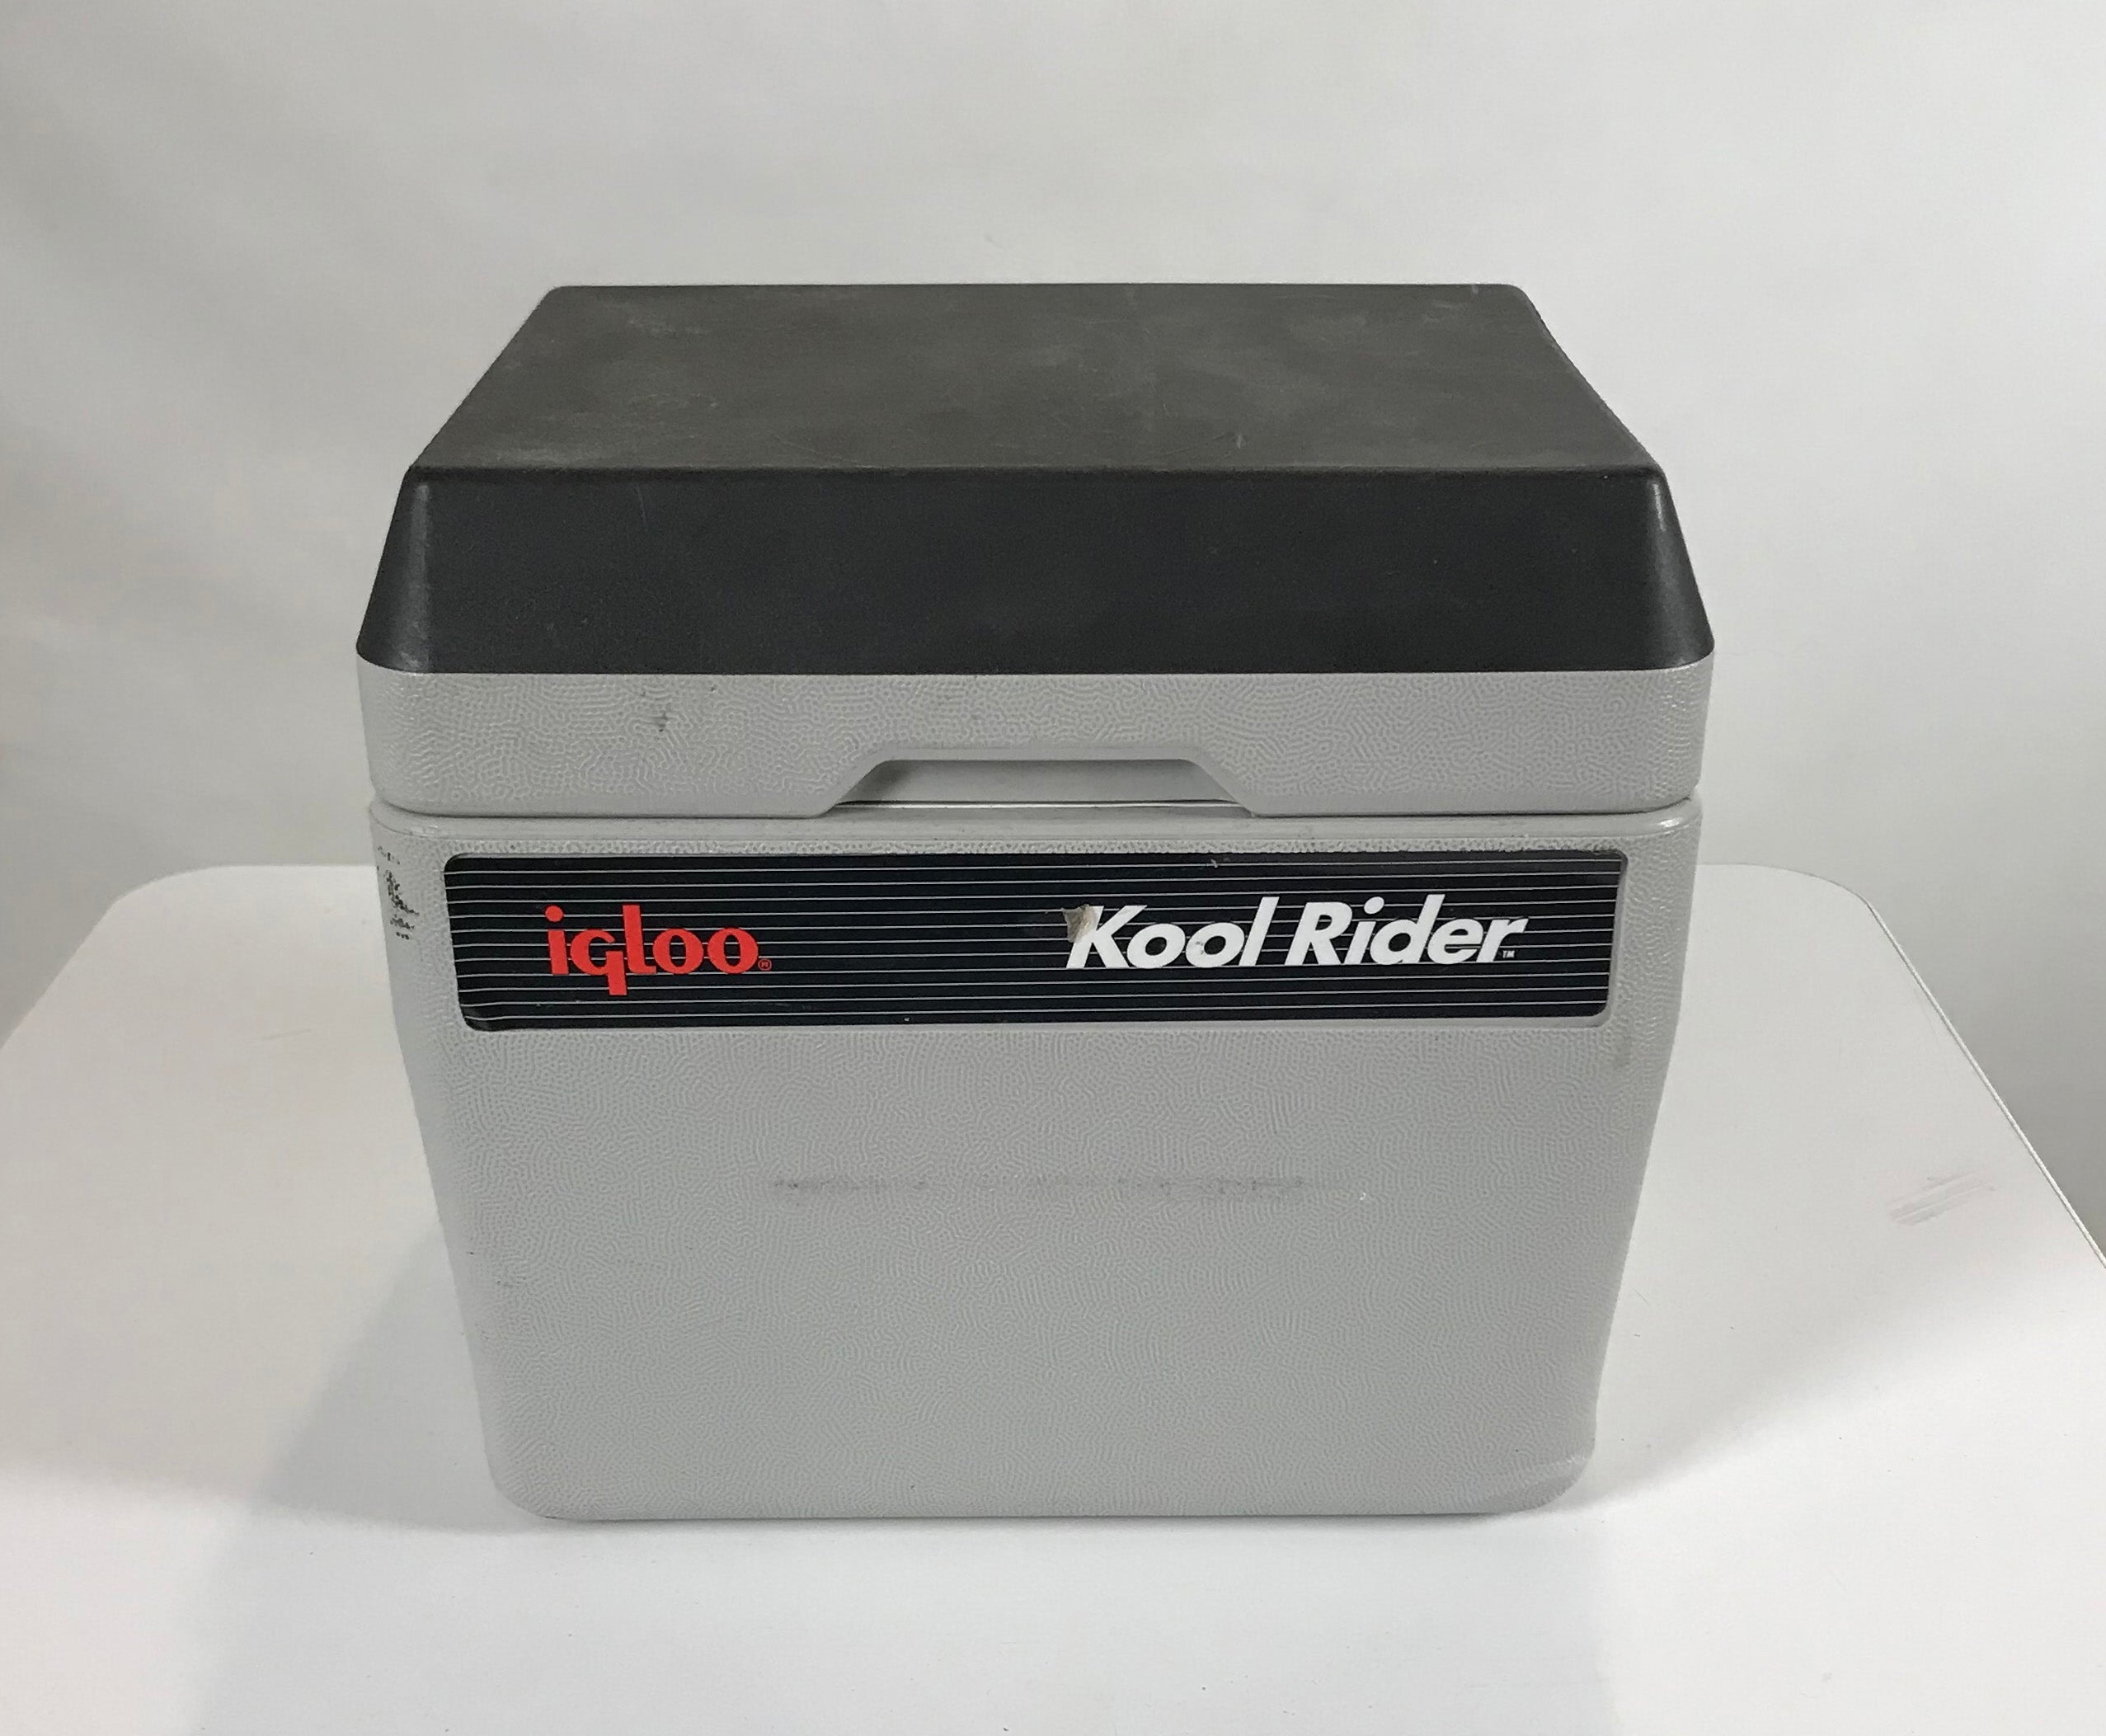 Igloo Kool Rider